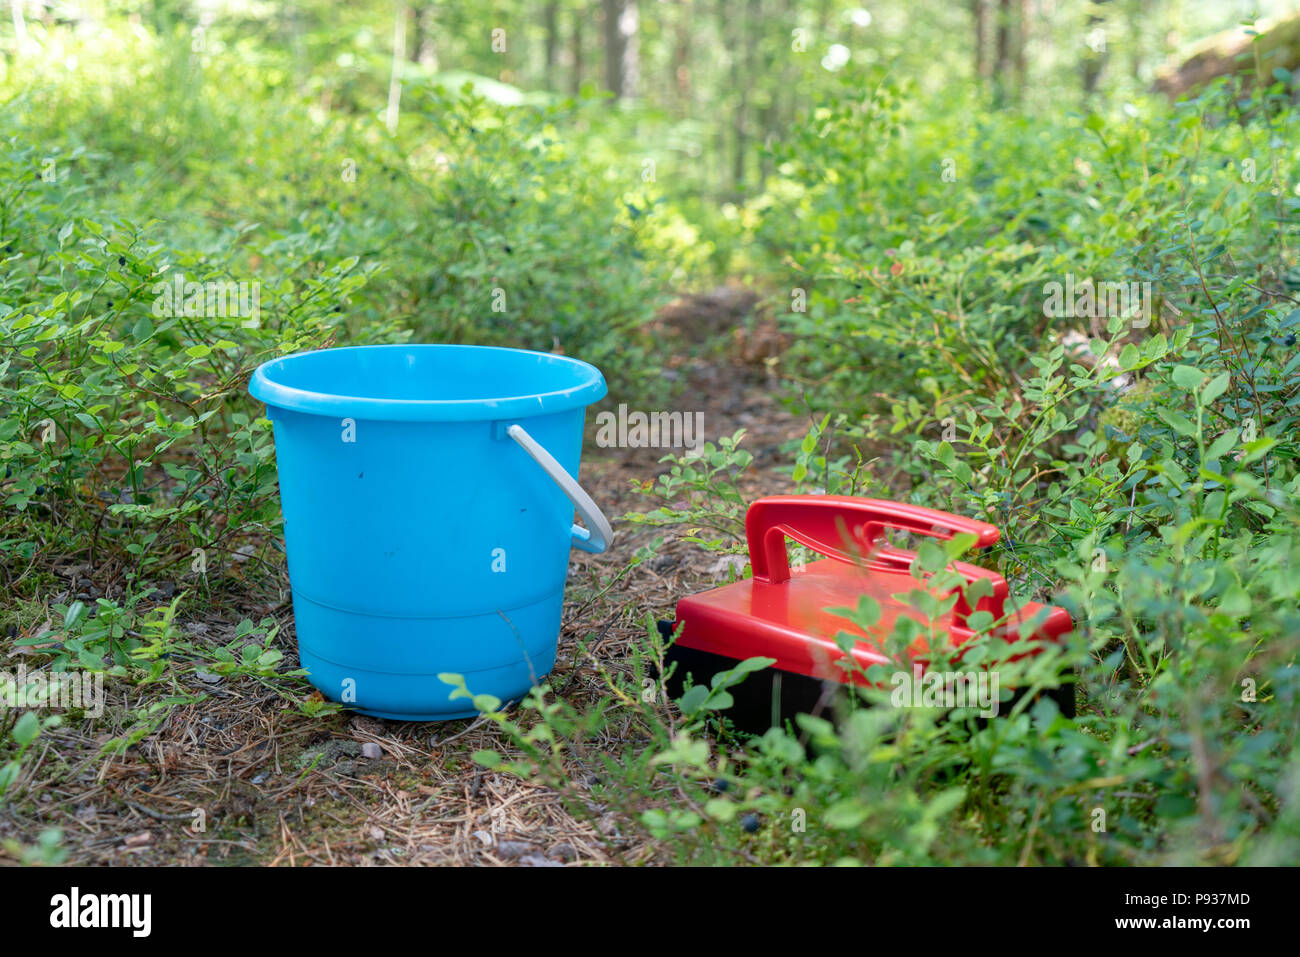 Bacca rossa picker e benna blu per la raccolta di mirtilli di bosco Foto Stock